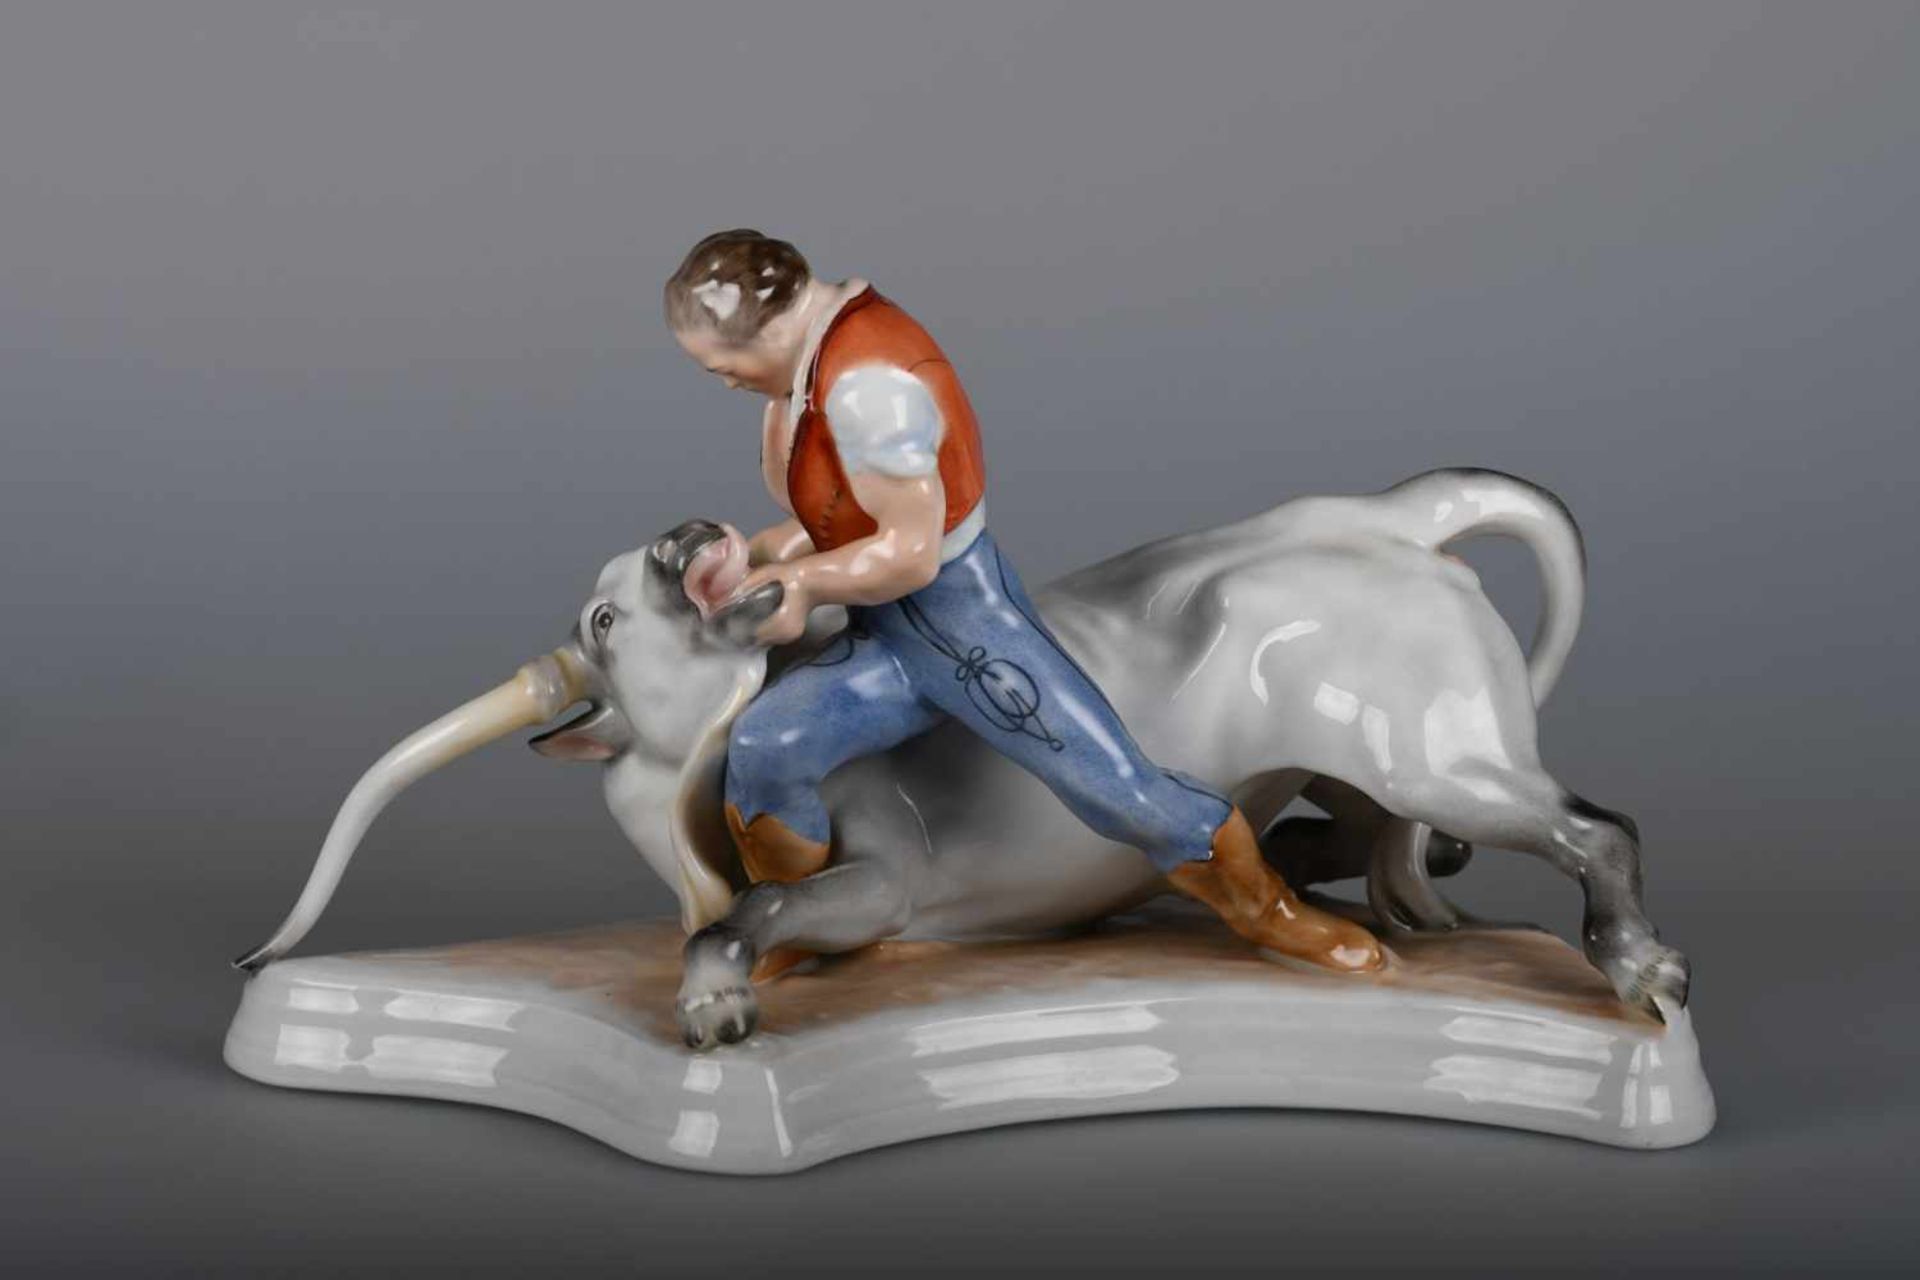 Porzellanfigurengruppe "Toldi mit dem Stier", Herendblaue Manufakturmarke, Prägemarke und